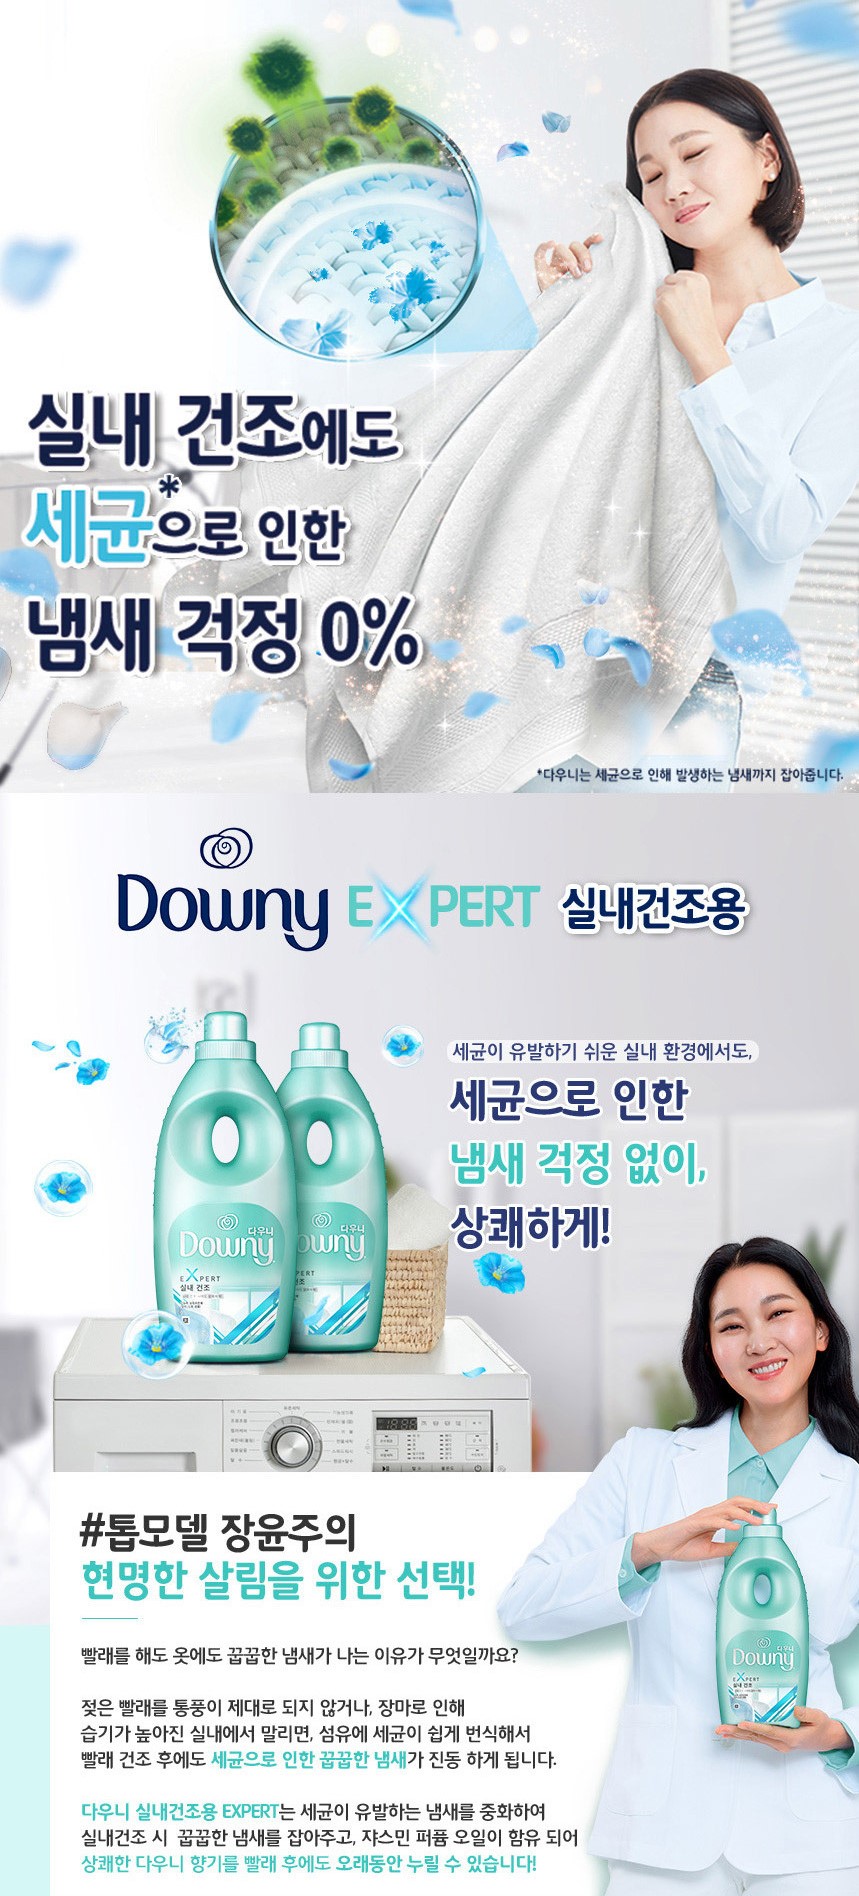 韓國食品-[Downy] Expert Fabric Softener [Indoor Drying - Jasmine Flavour) 1L